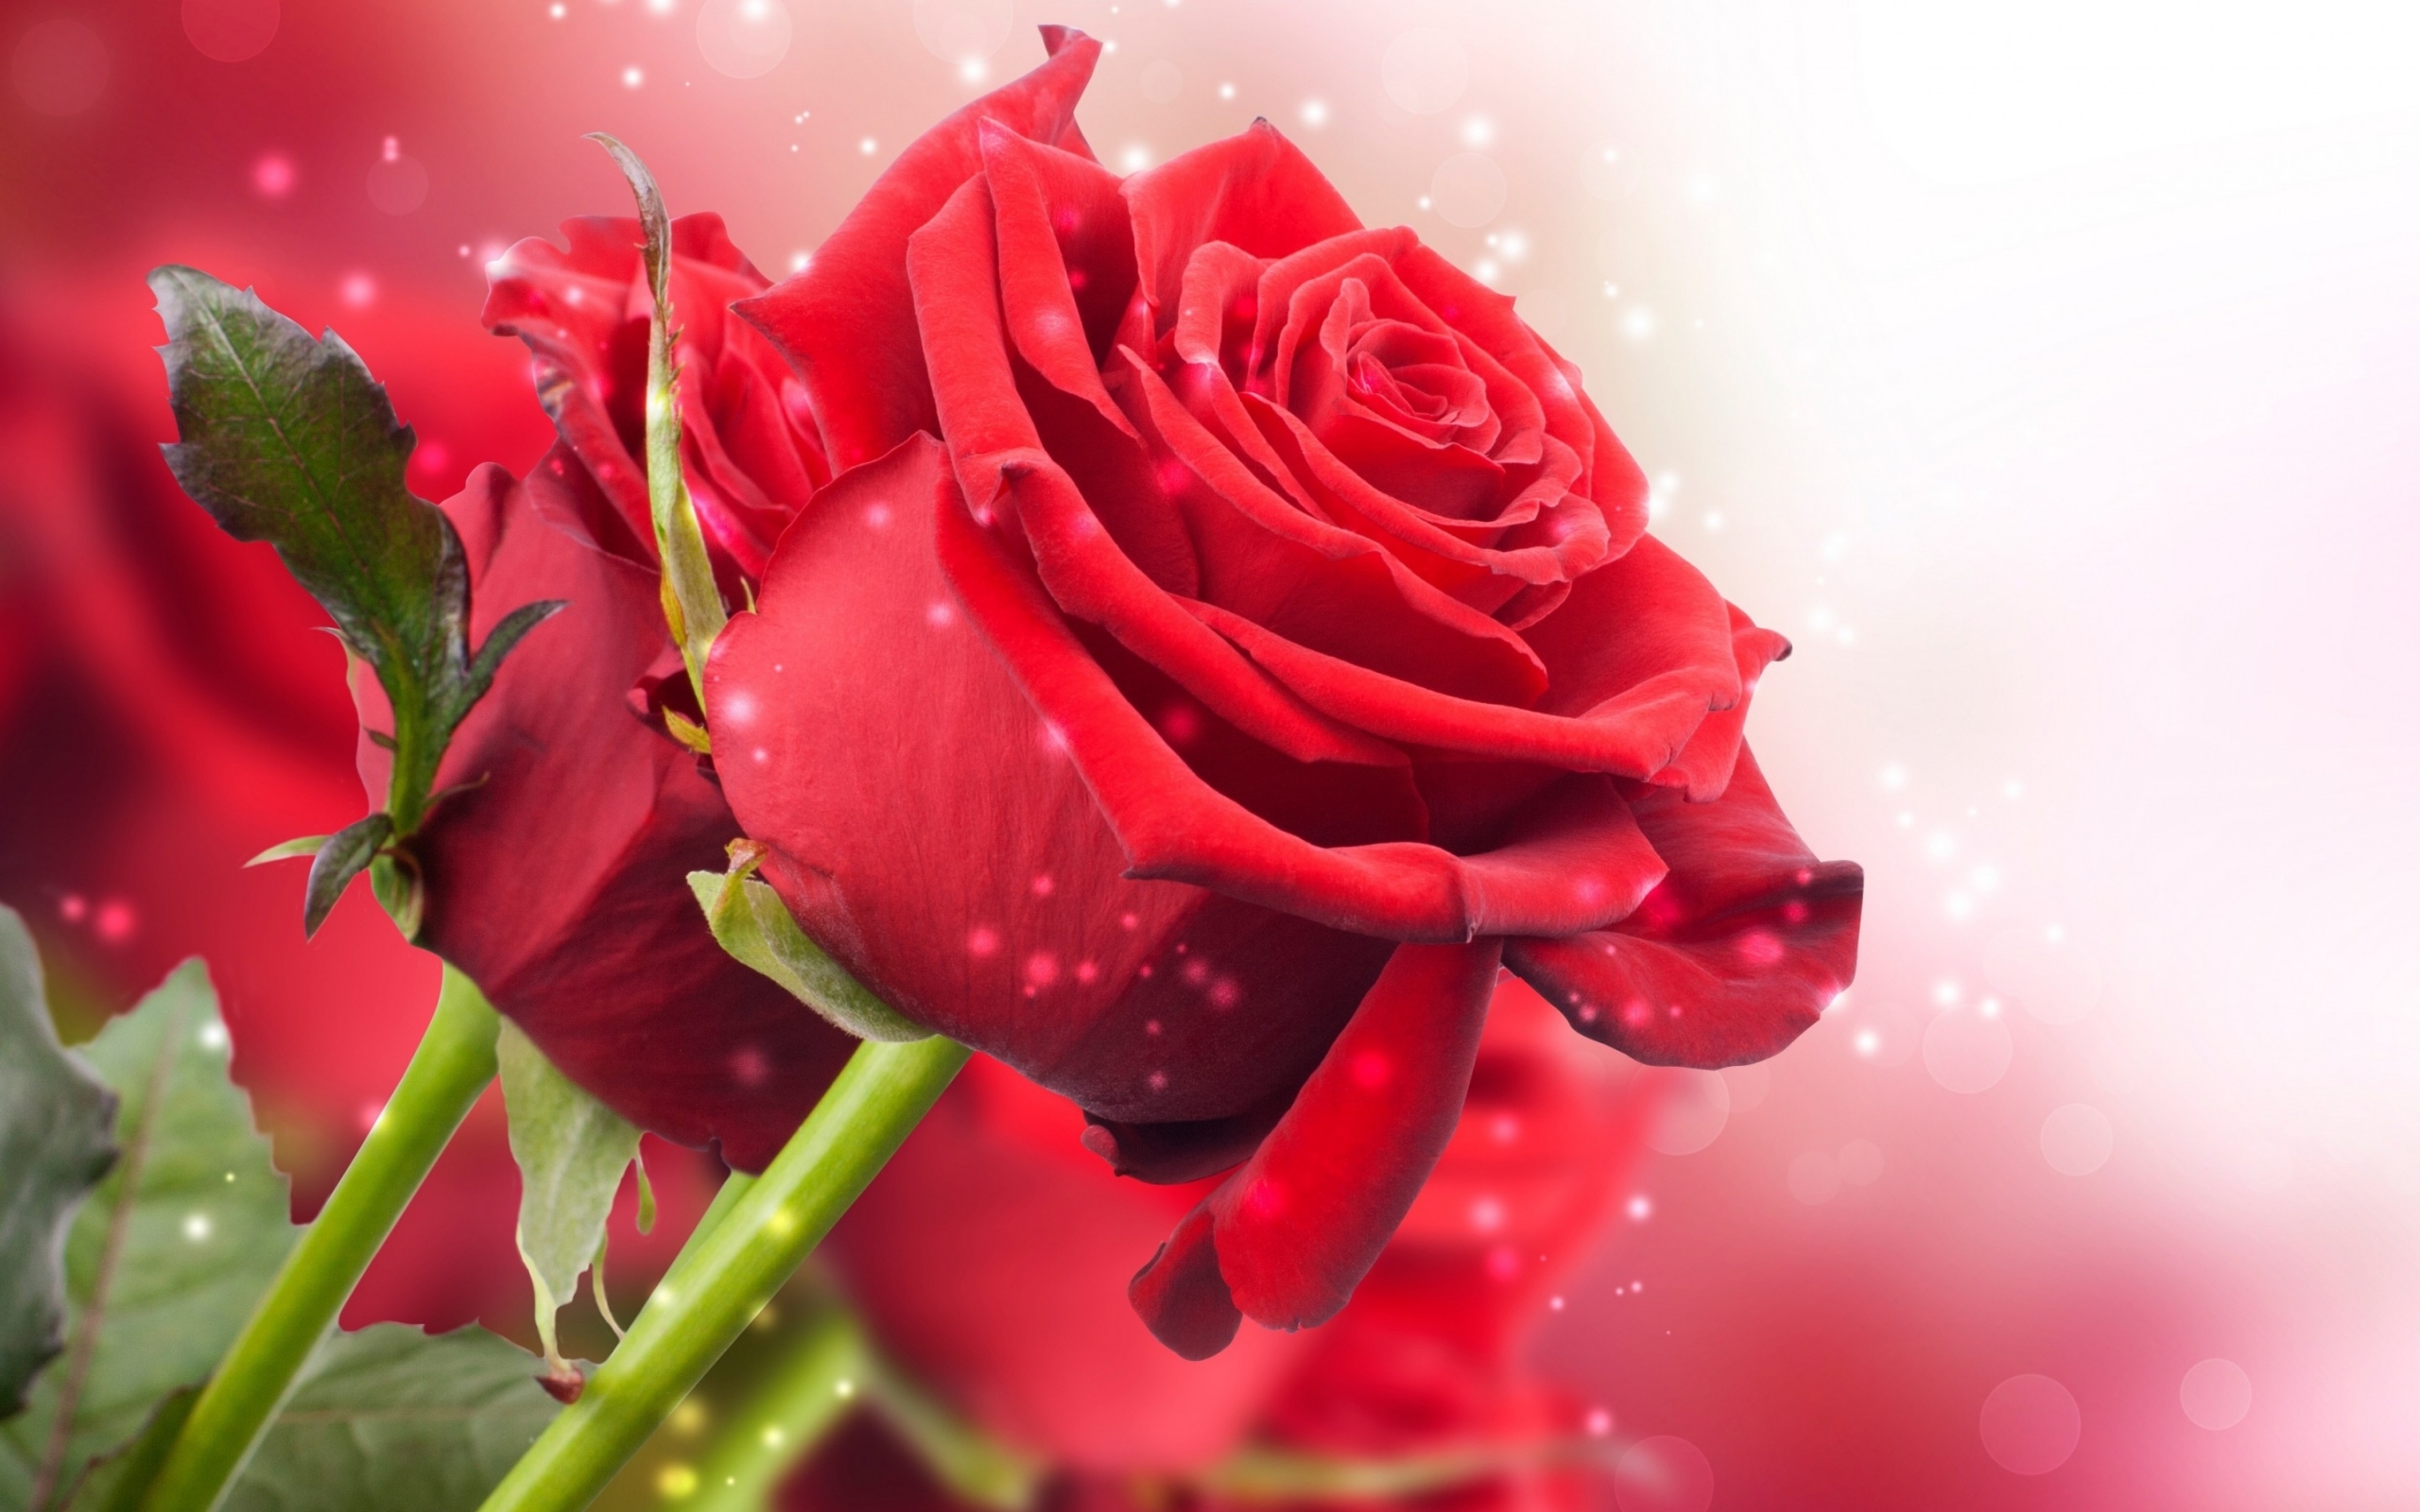 39678 Salvapantallas y fondos de pantalla Roses en tu teléfono. Descarga imágenes de rojo, plantas, flores gratis